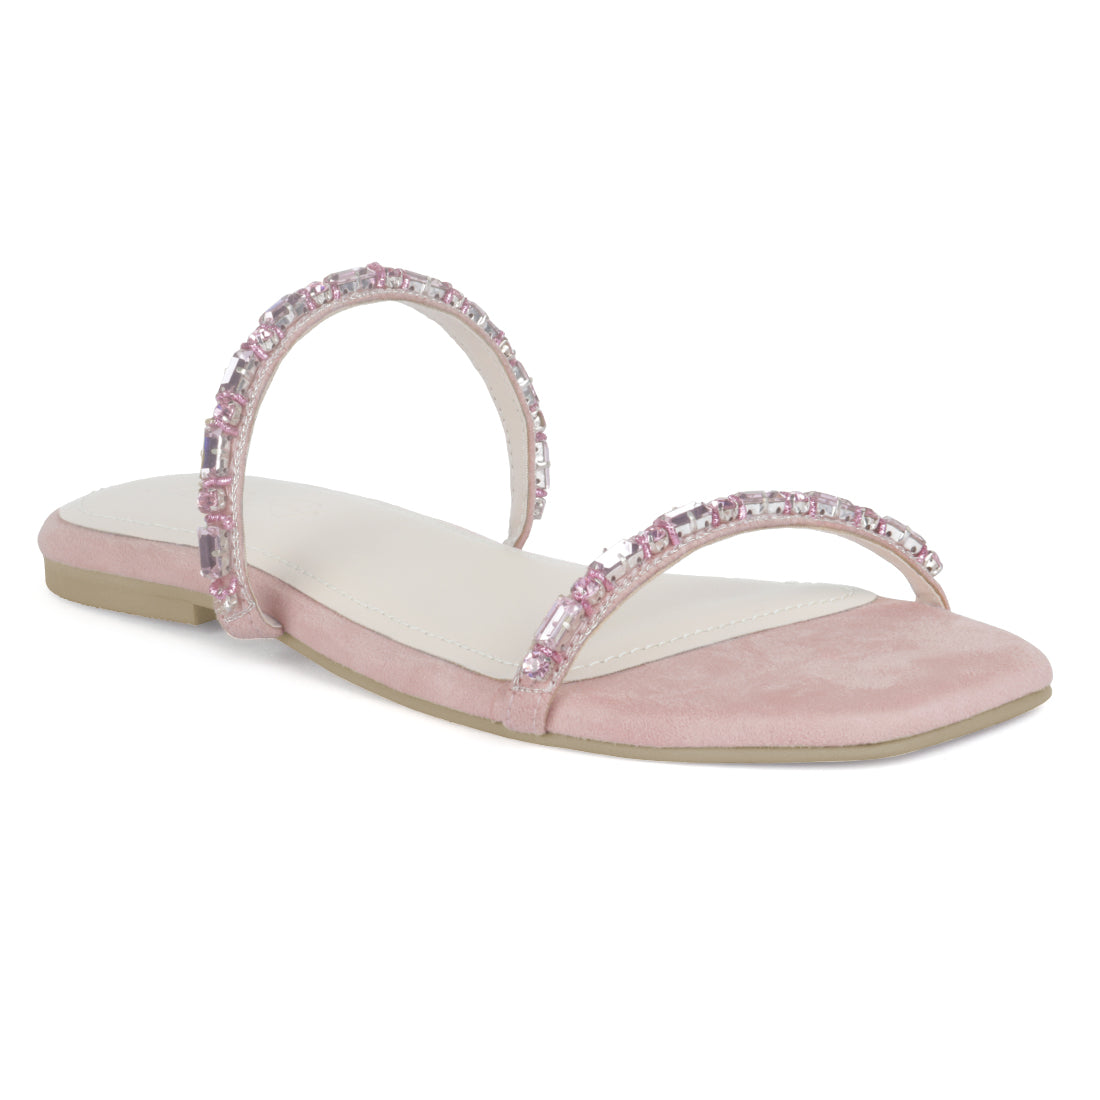 Embellished Flat Slides in Blush - Pink